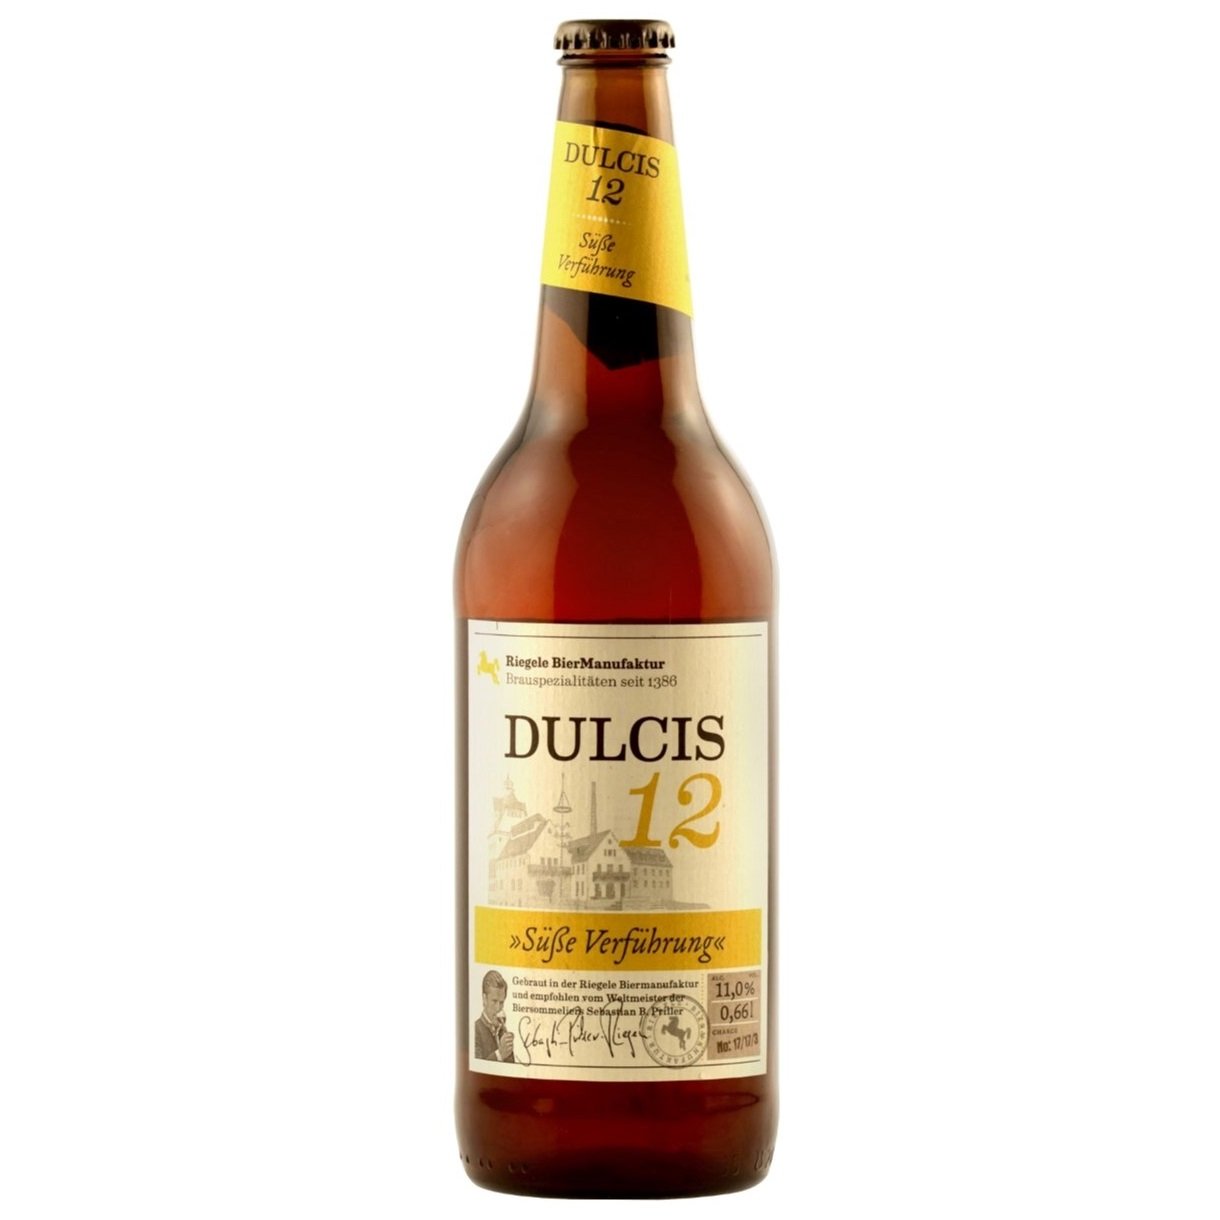 Пиво Riegele Dulcis 12, светлое, 11%, 0,66 л (749205) - фото 1